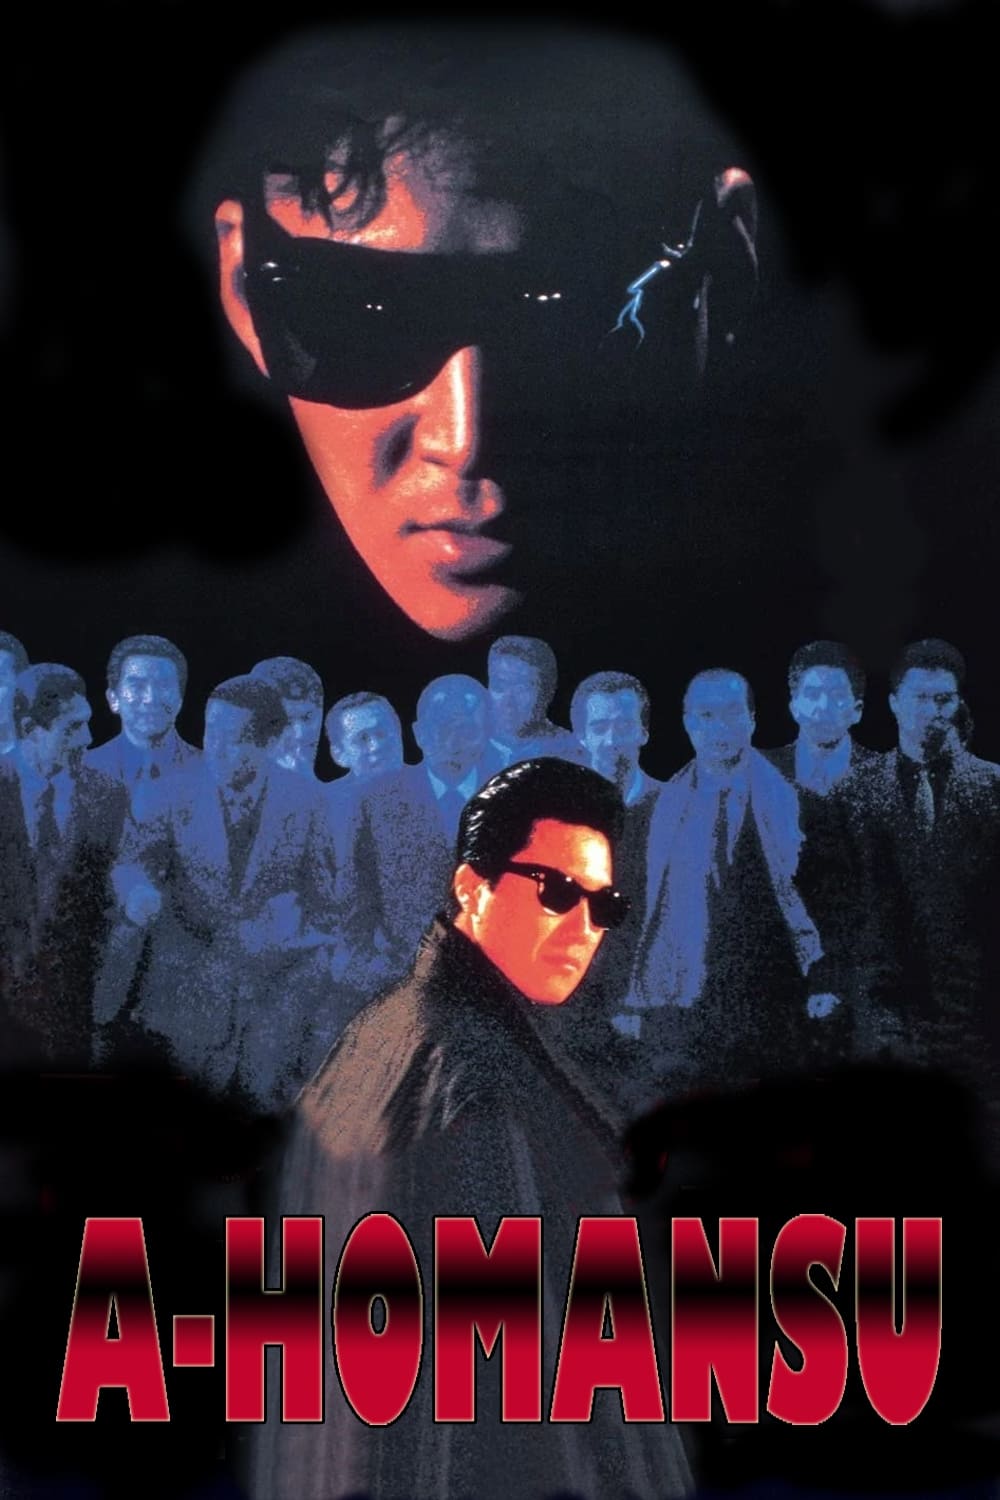 A Homance (1986)